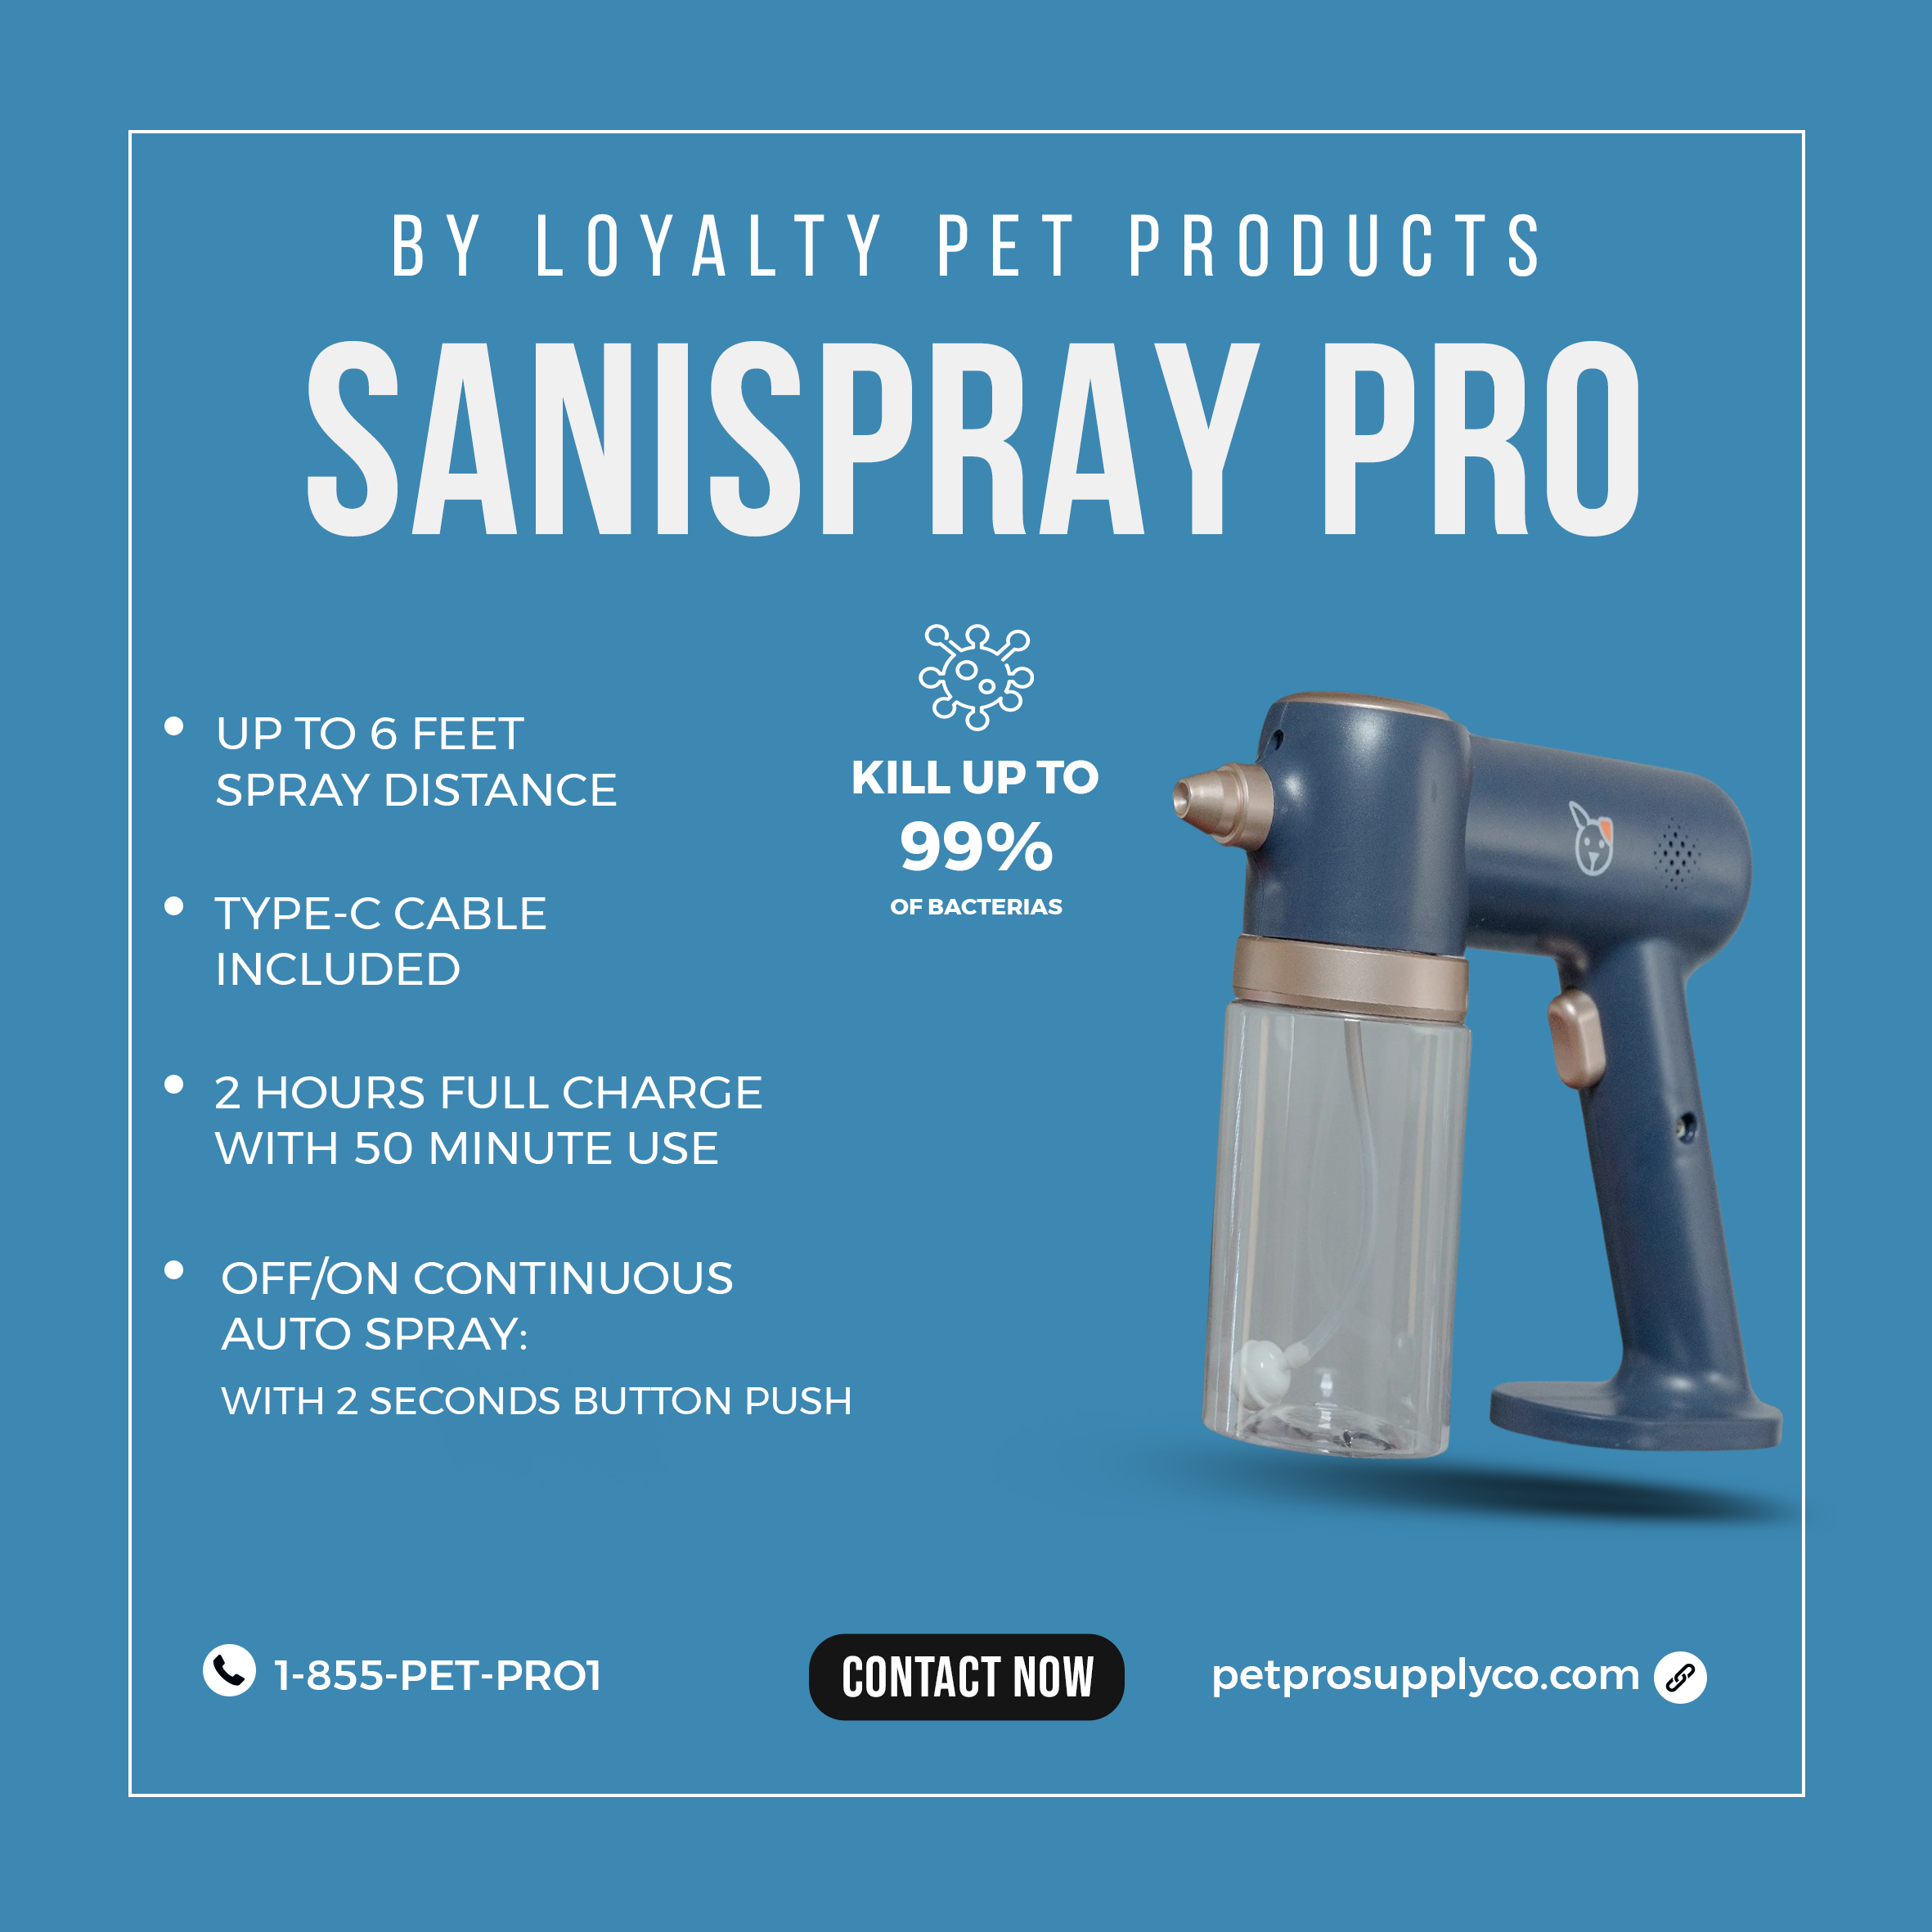 SaniSpray Pro: The Ultimate Multi-Purpose Spray Gun